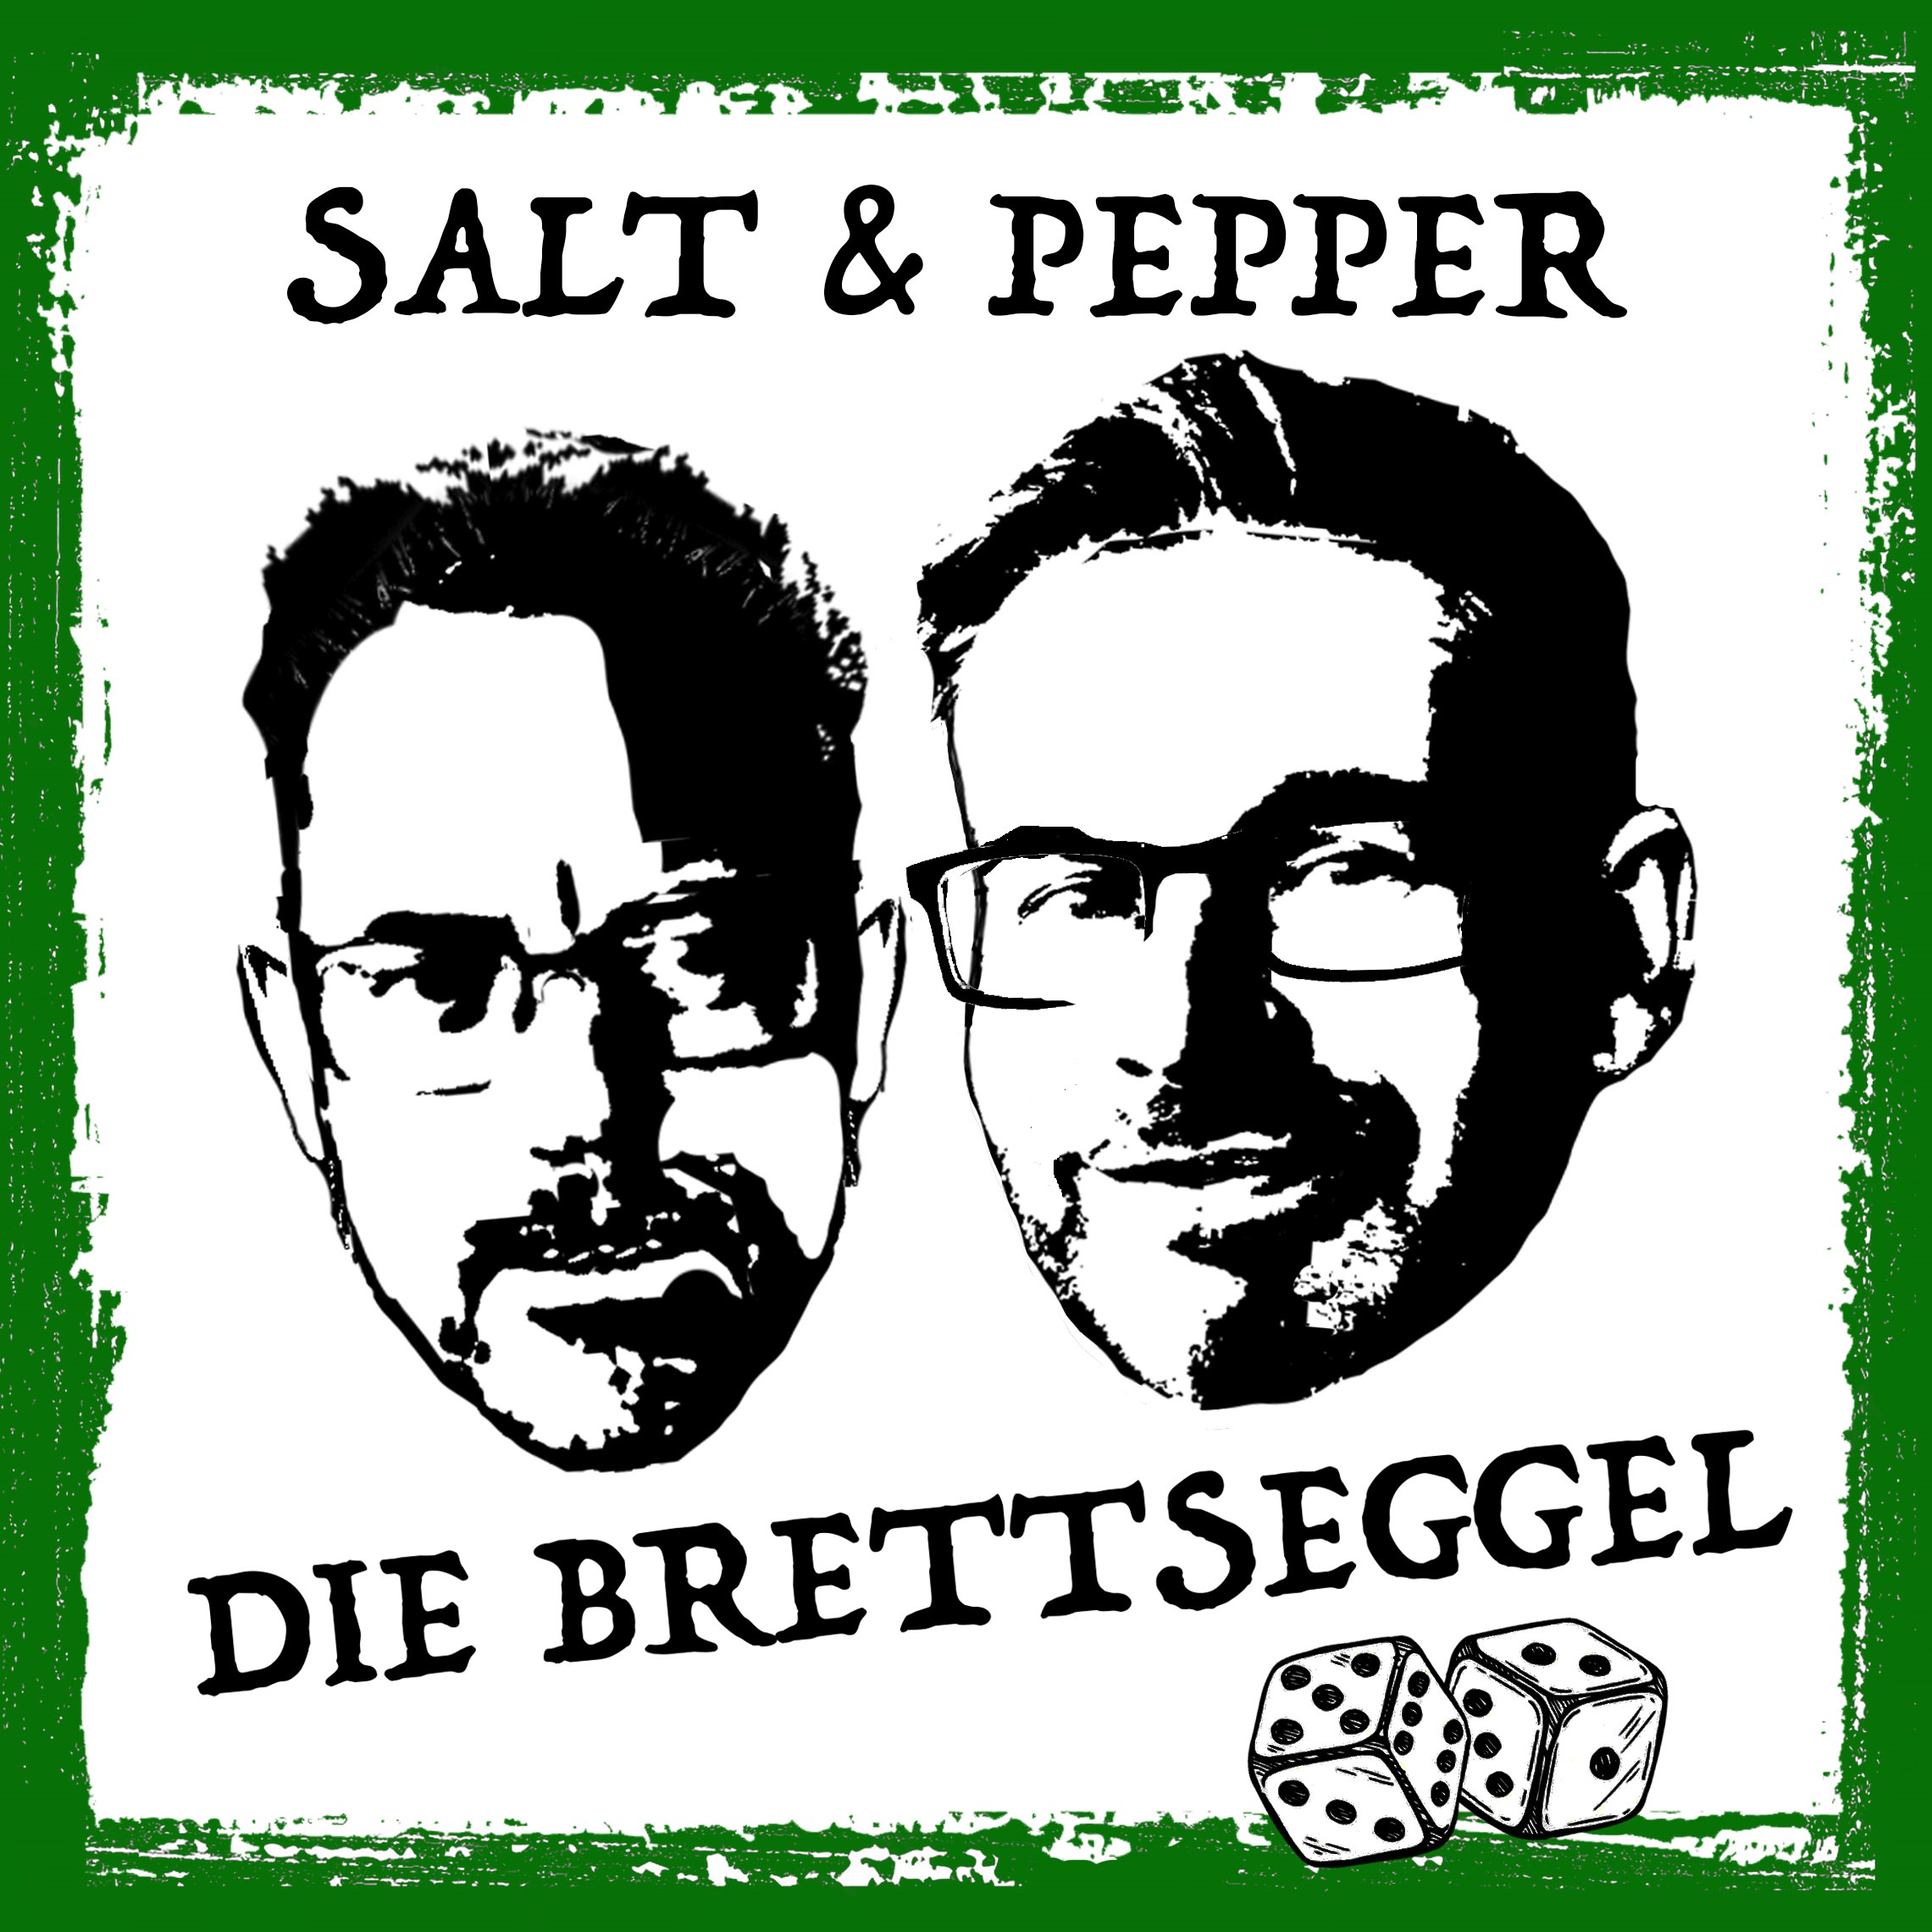 Salt & Pepper – Die Brettseggel